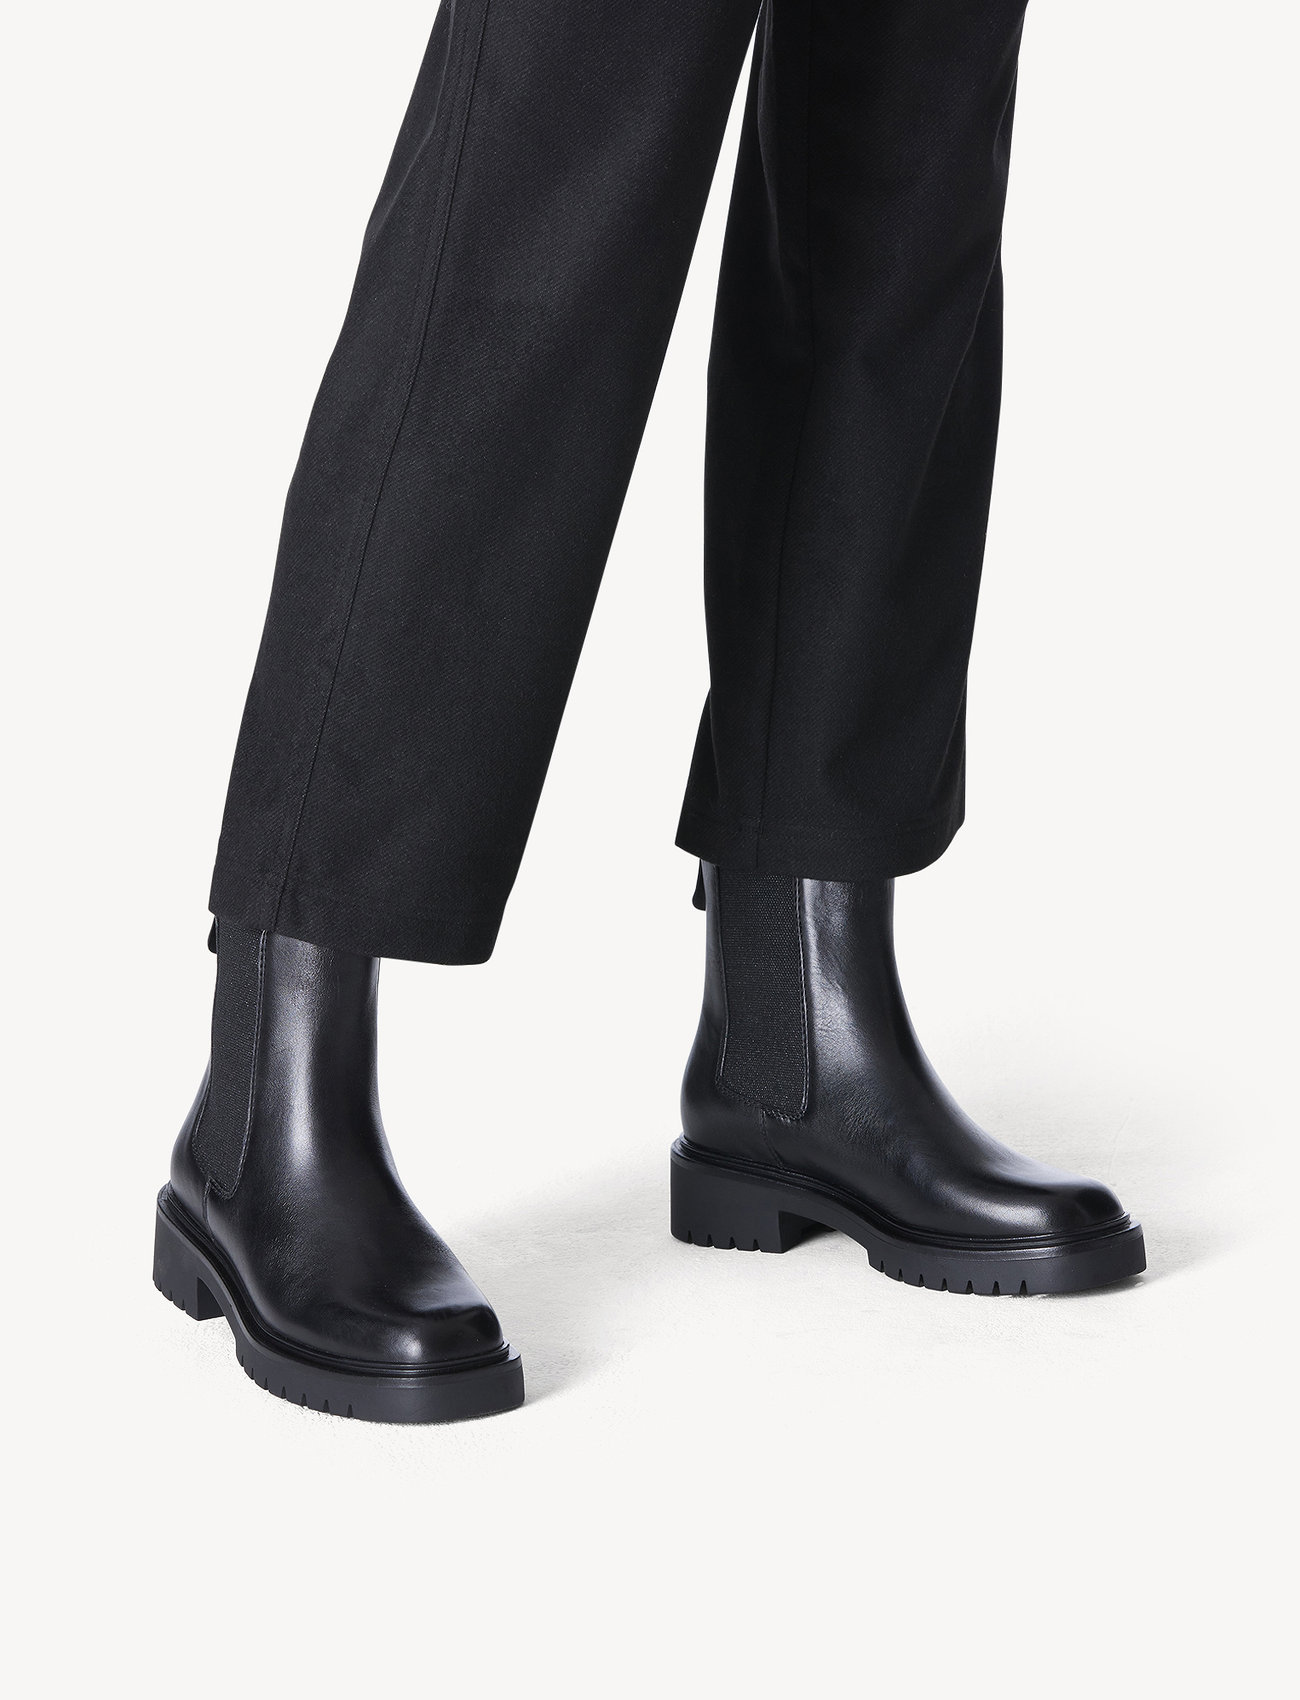 Tamaris - Women Boots - lygiapadžiai aulinukai iki kulkšnių - black - 1